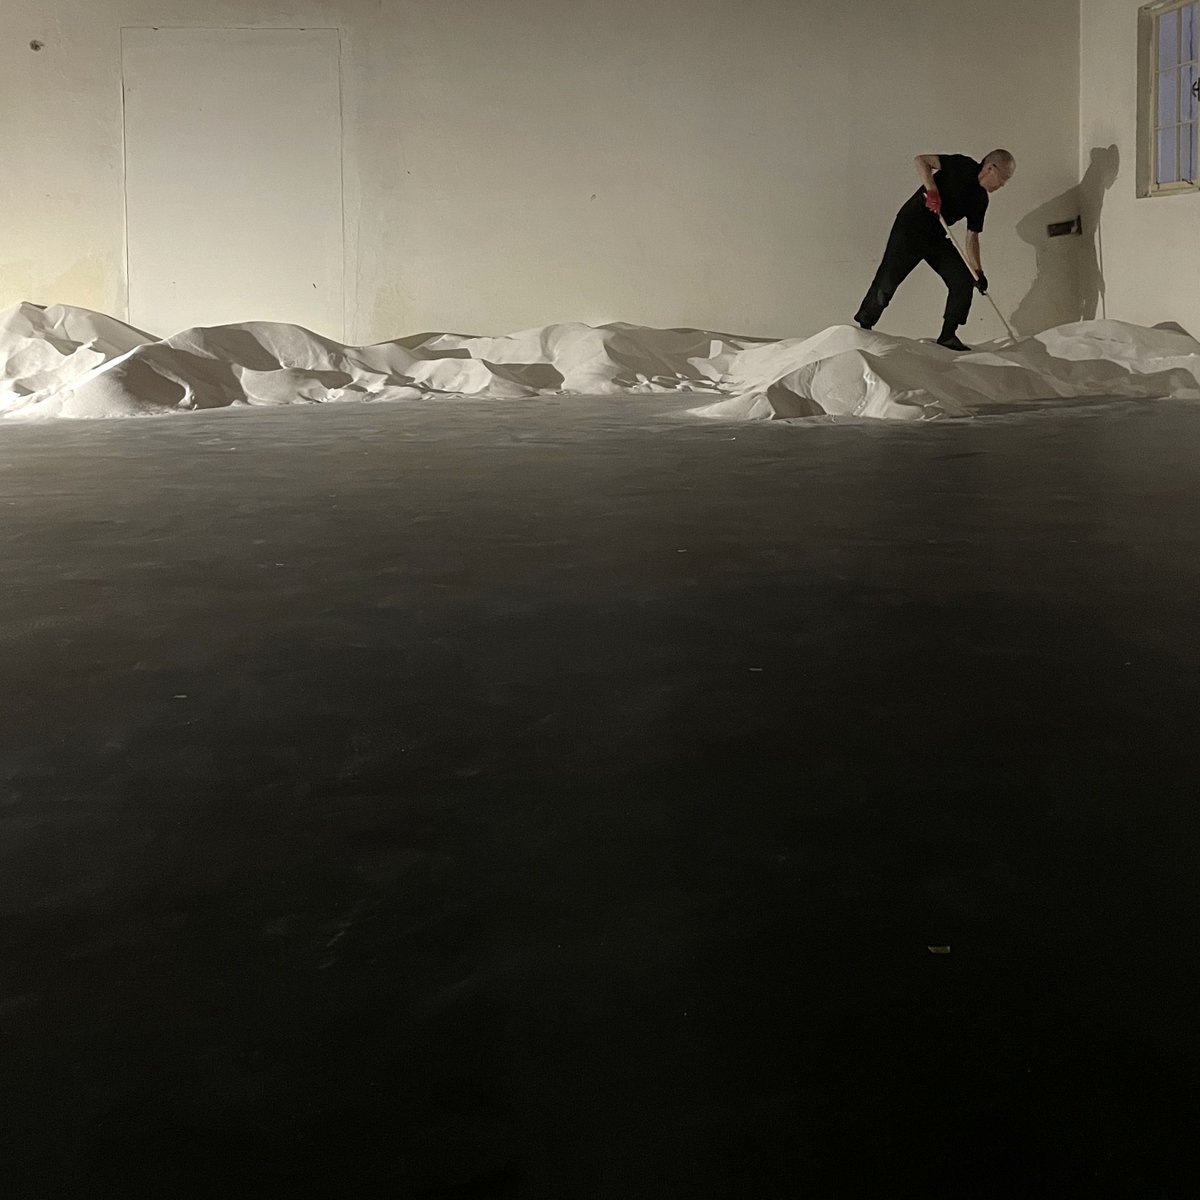 バート･イシュルでの制作初日。はじまりました！

Sudhaus – Art with Salt and Water
2024年1月20日（土）〜10月31日（木）
motoi-works.com/archives/4350

#山本基
#motoiyamamoto
#salzkammergut2024
#mikikosatogallery